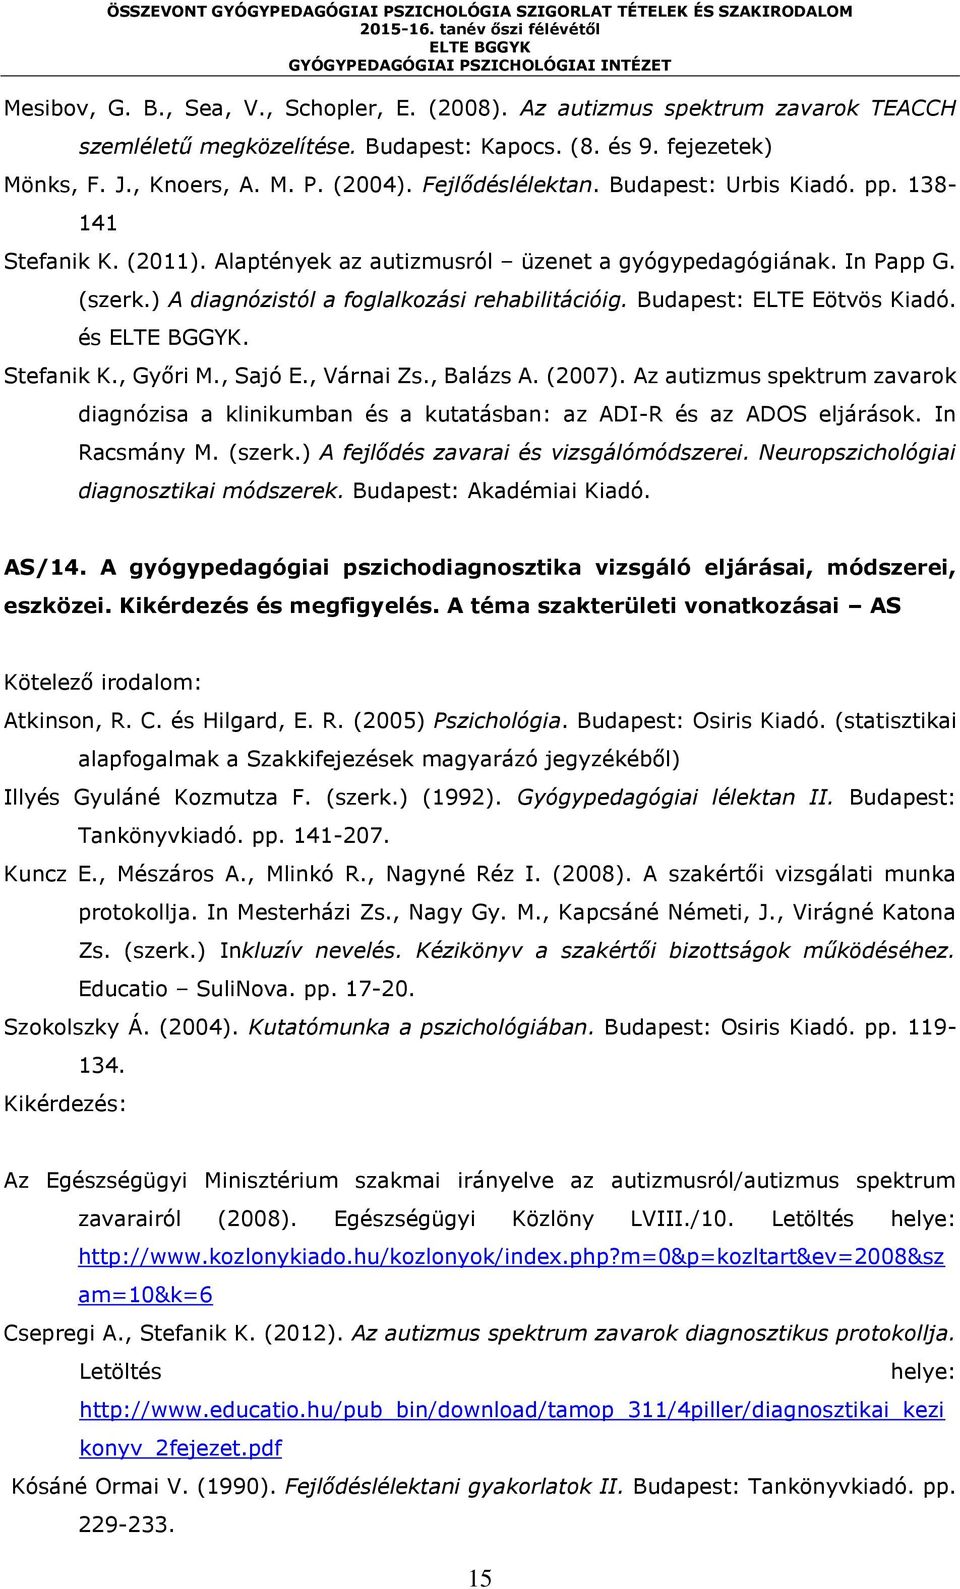 Budapest: ELTE Eötvös Kiadó. és. Stefanik K., Győri M., Sajó E., Várnai Zs., Balázs A. (2007). Az autizmus spektrum zavarok diagnózisa a klinikumban és a kutatásban: az ADI-R és az ADOS eljárások.